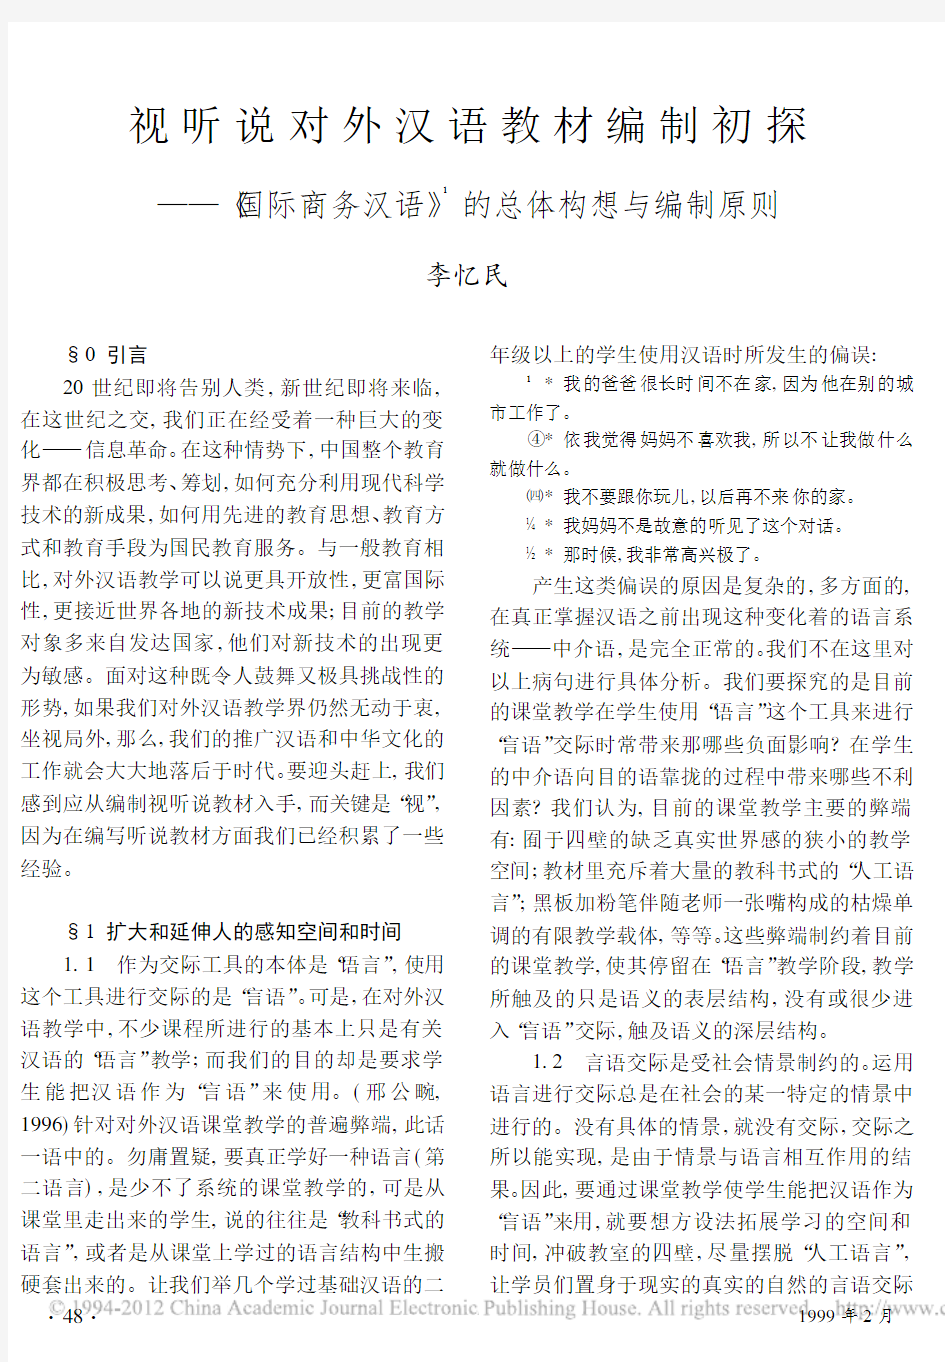 视听说对外汉语教材编制初探_国际商务汉语_的总体构想与编制原则